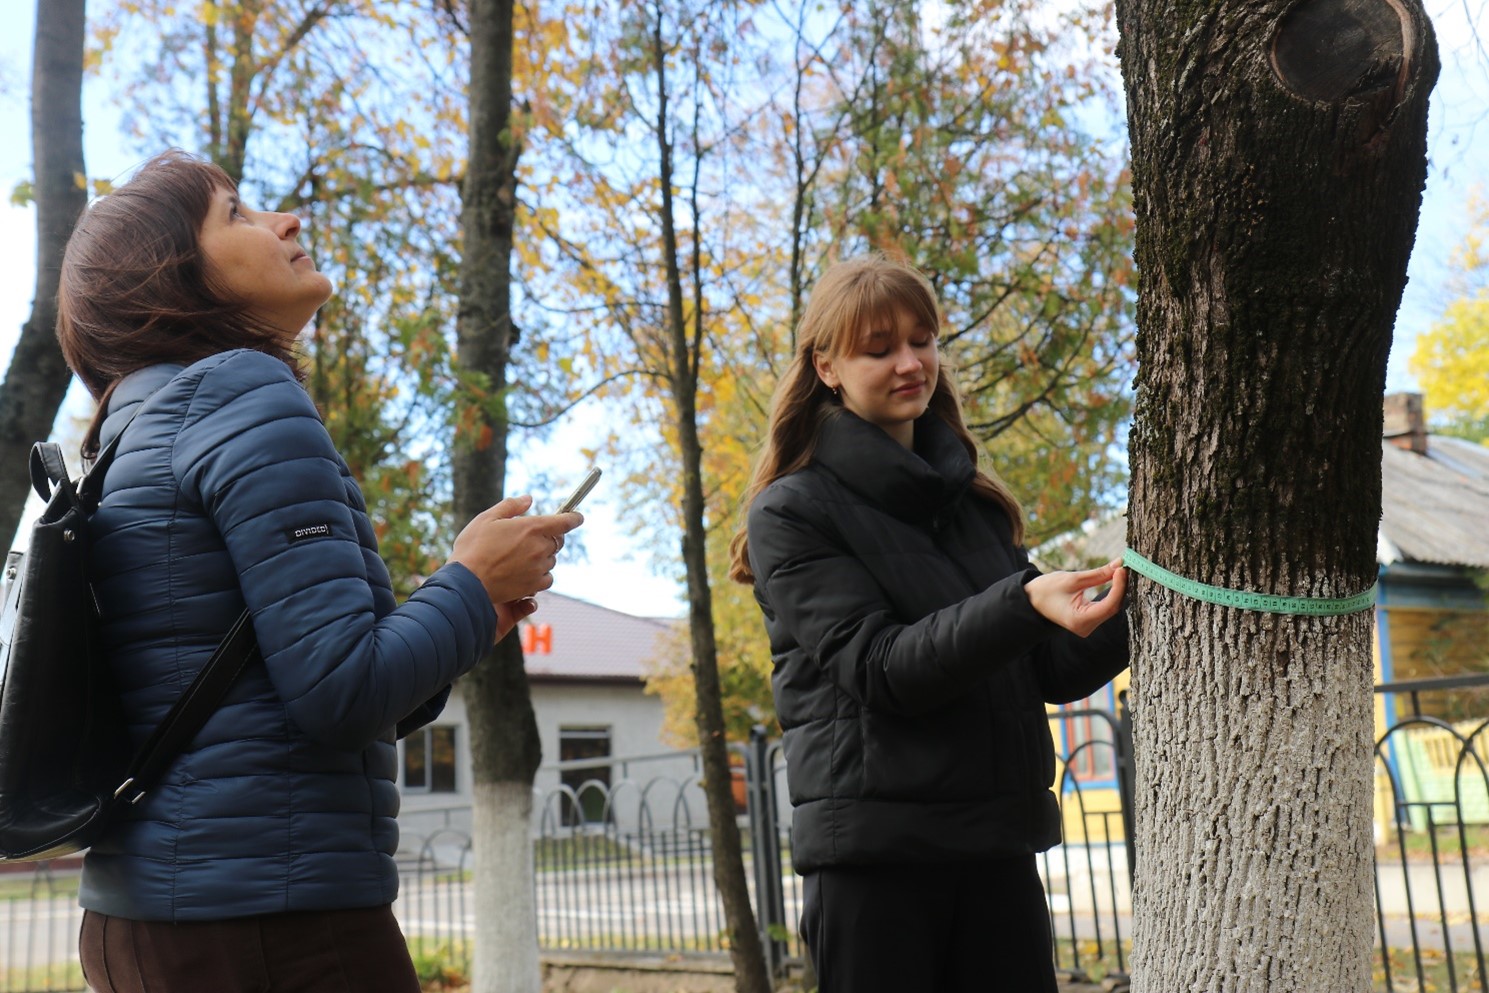 2 women measure trees